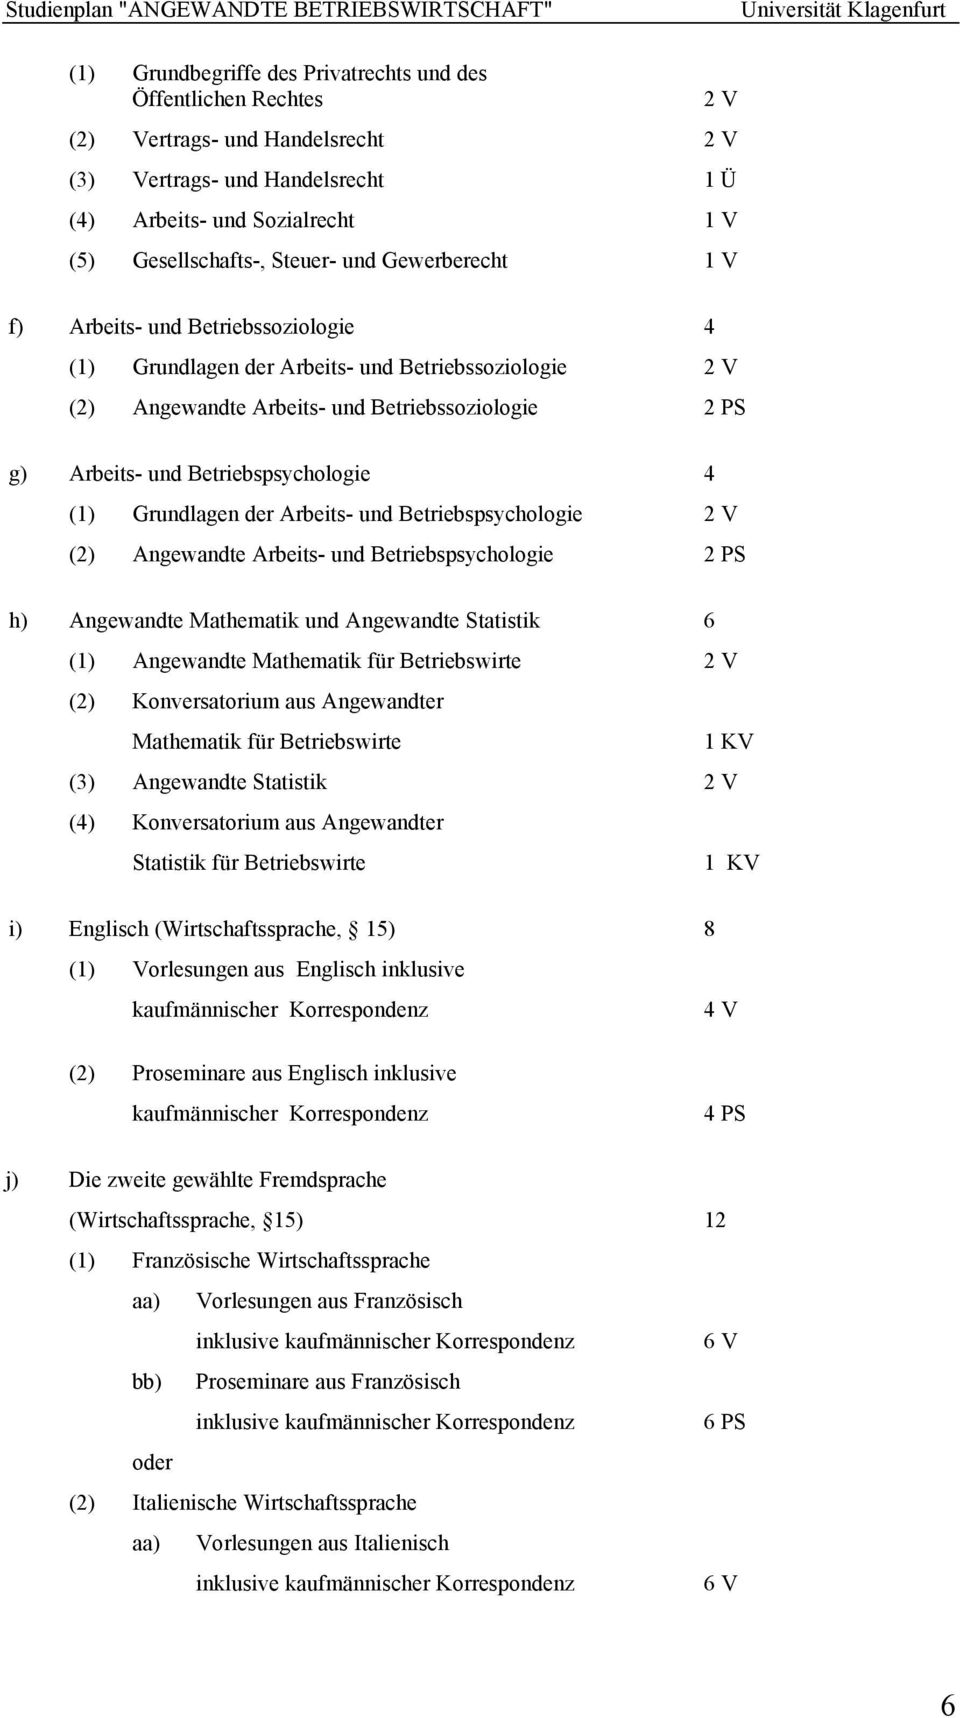 Betriebspsychologie 4 (1) Grundlagen der Arbeits- und Betriebspsychologie 2 V (2) Angewandte Arbeits- und Betriebspsychologie 2 PS h) Angewandte Mathematik und Angewandte Statistik 6 (1) Angewandte